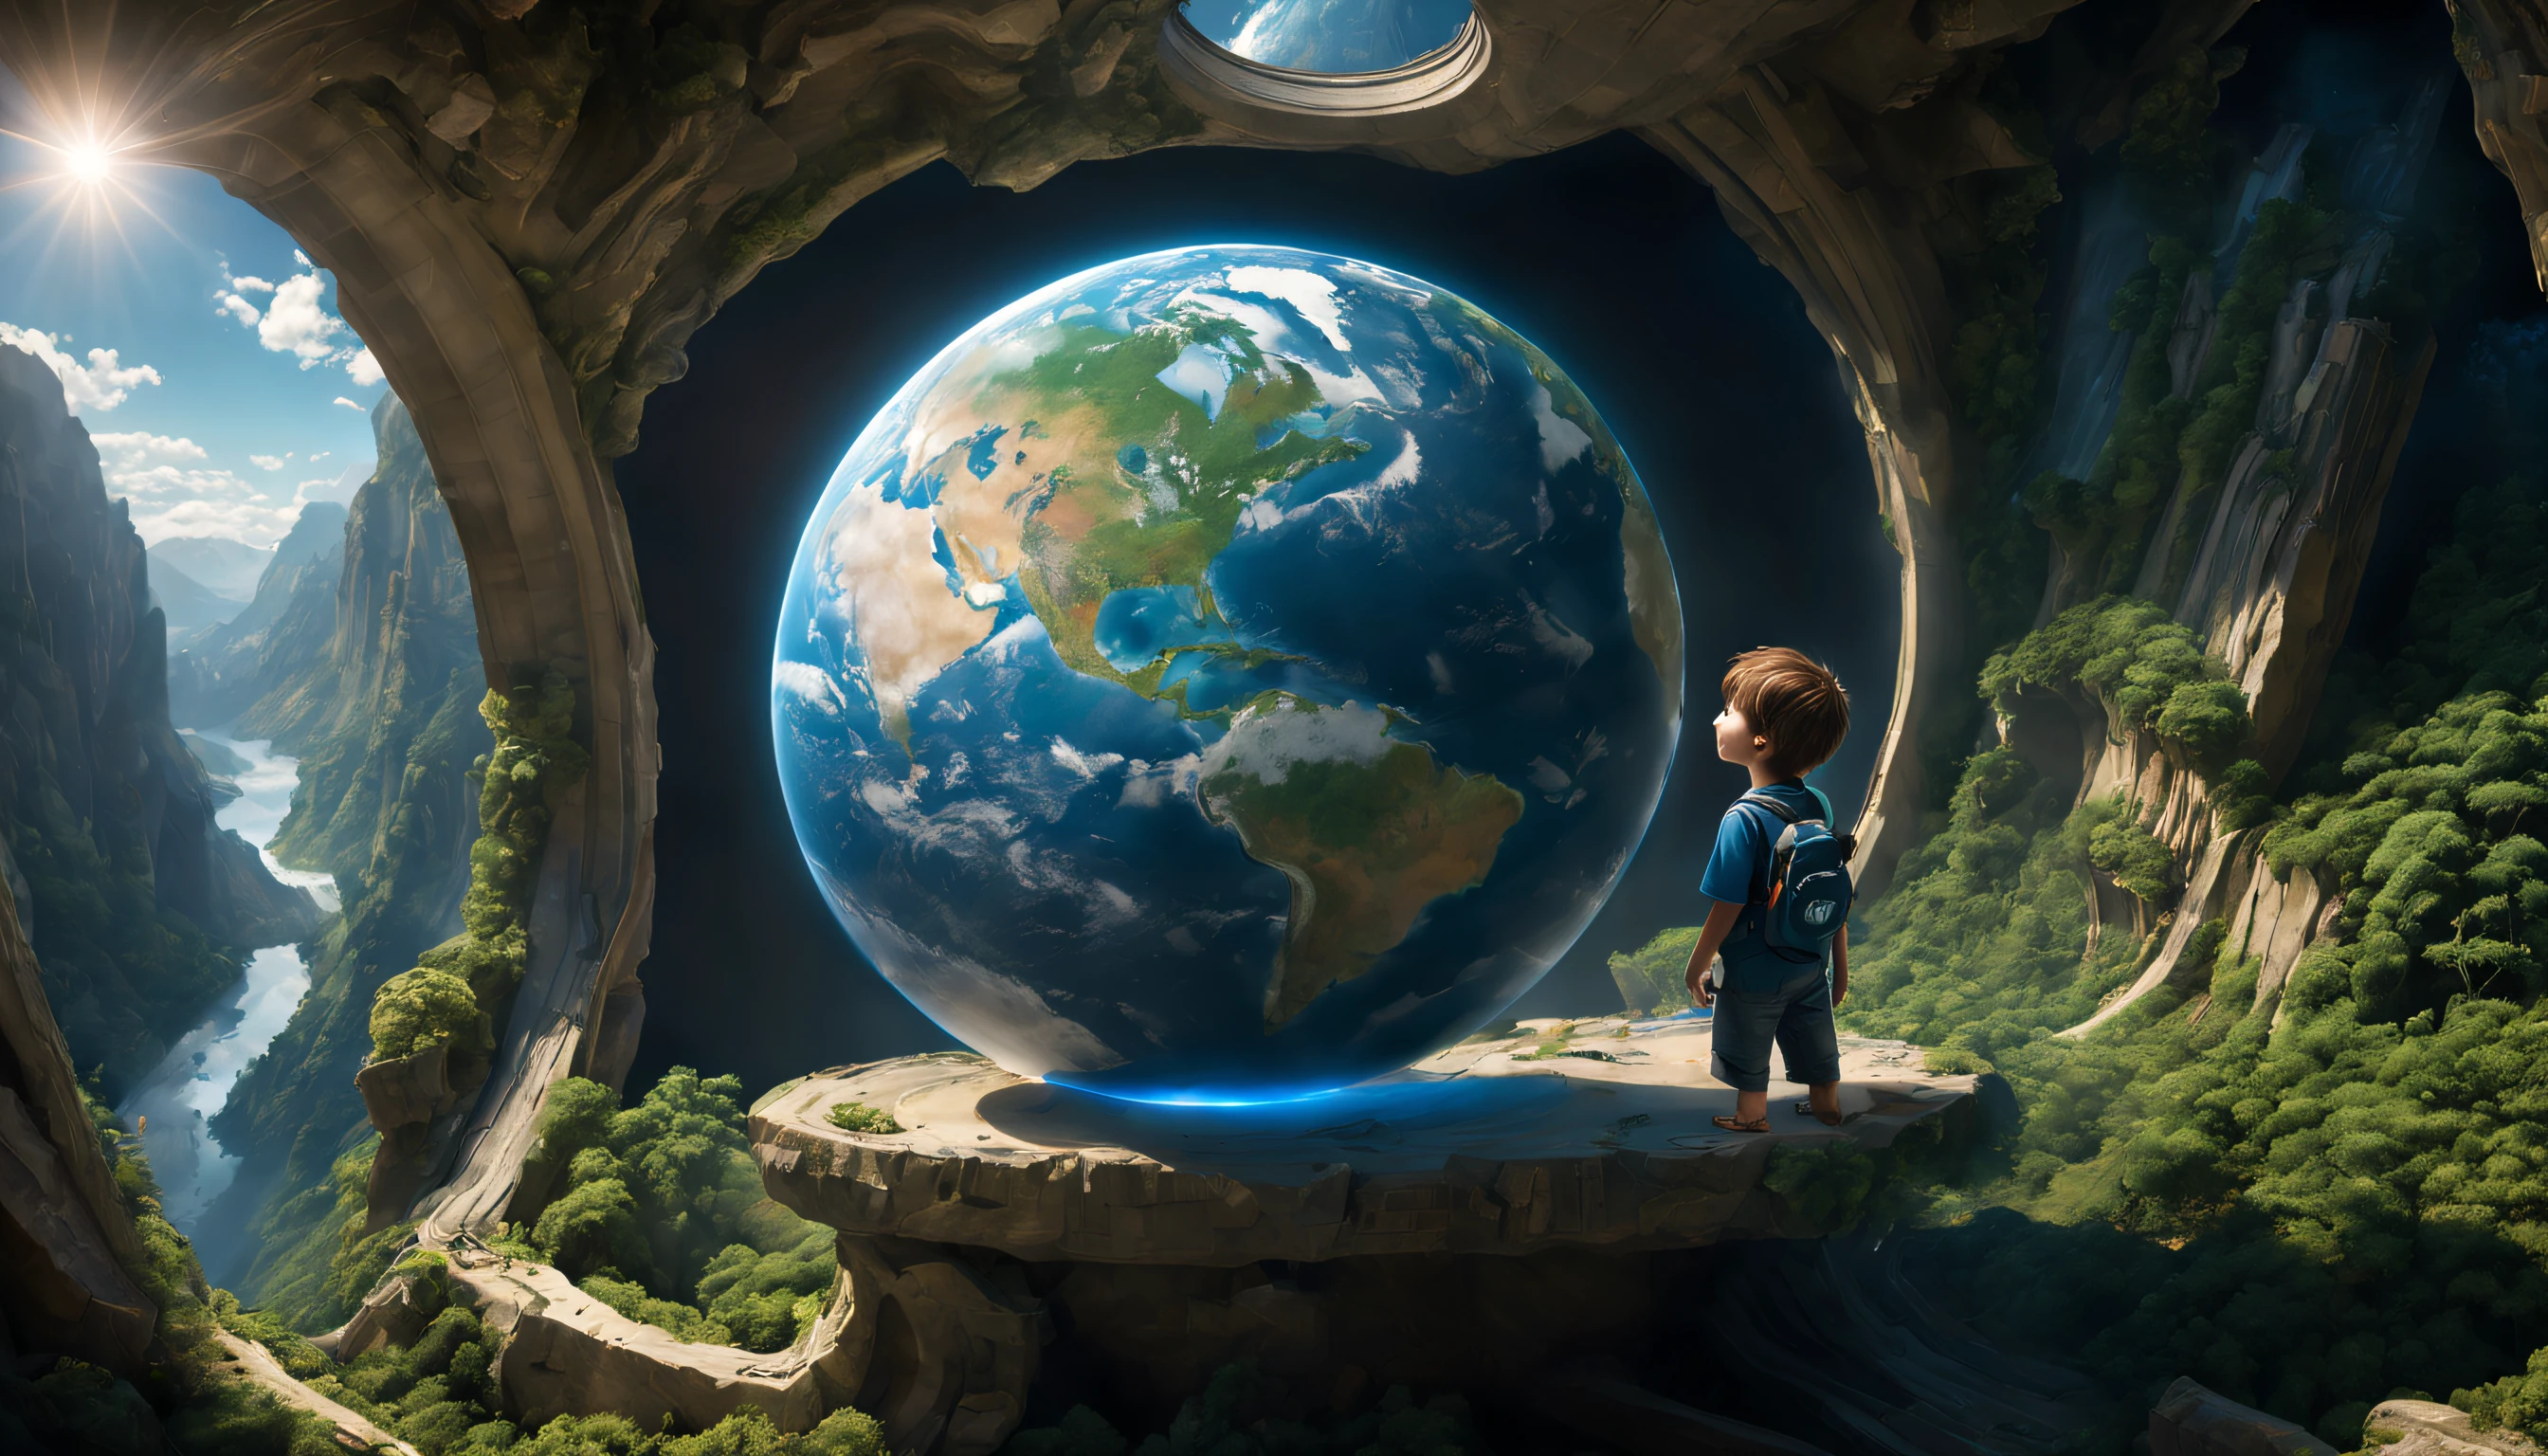 (ein Junge: 0.8), (Die Erde:1.4), (beste Qualität,4k,8k,highres,Meisterwerk:1.2), (ultra-detailliert), (Realistisch,photoRealistisch,photo-Realistisch:1.37), (HDR), (lebendige Farben), (scharfes Fokussiertes Sonnenlicht), (kleiner Junge), (Globus), (Blauer Planet), (Normale Kleidung), ((Doktorhut)), (schwebend), (Raumfahrzeug), (Neugier), (wonder), (Erdatmosphäre), (unendliches Universum), (ätherisch), (unerforschtes Gebiet), (grenzenloses Potenzial), (kristallklare Sicht), (Flüsse und Berge), (üppige grüne Vegetation), (unberührte Natur), (Friedlich), (surreal), (ehrfurchtgebietend), (Abenteuer), (Entdeckung), (Reise ins Ungewisse), (der Traum eines Jungen), (Hand berührt die Welt), (tolle Perspektive)